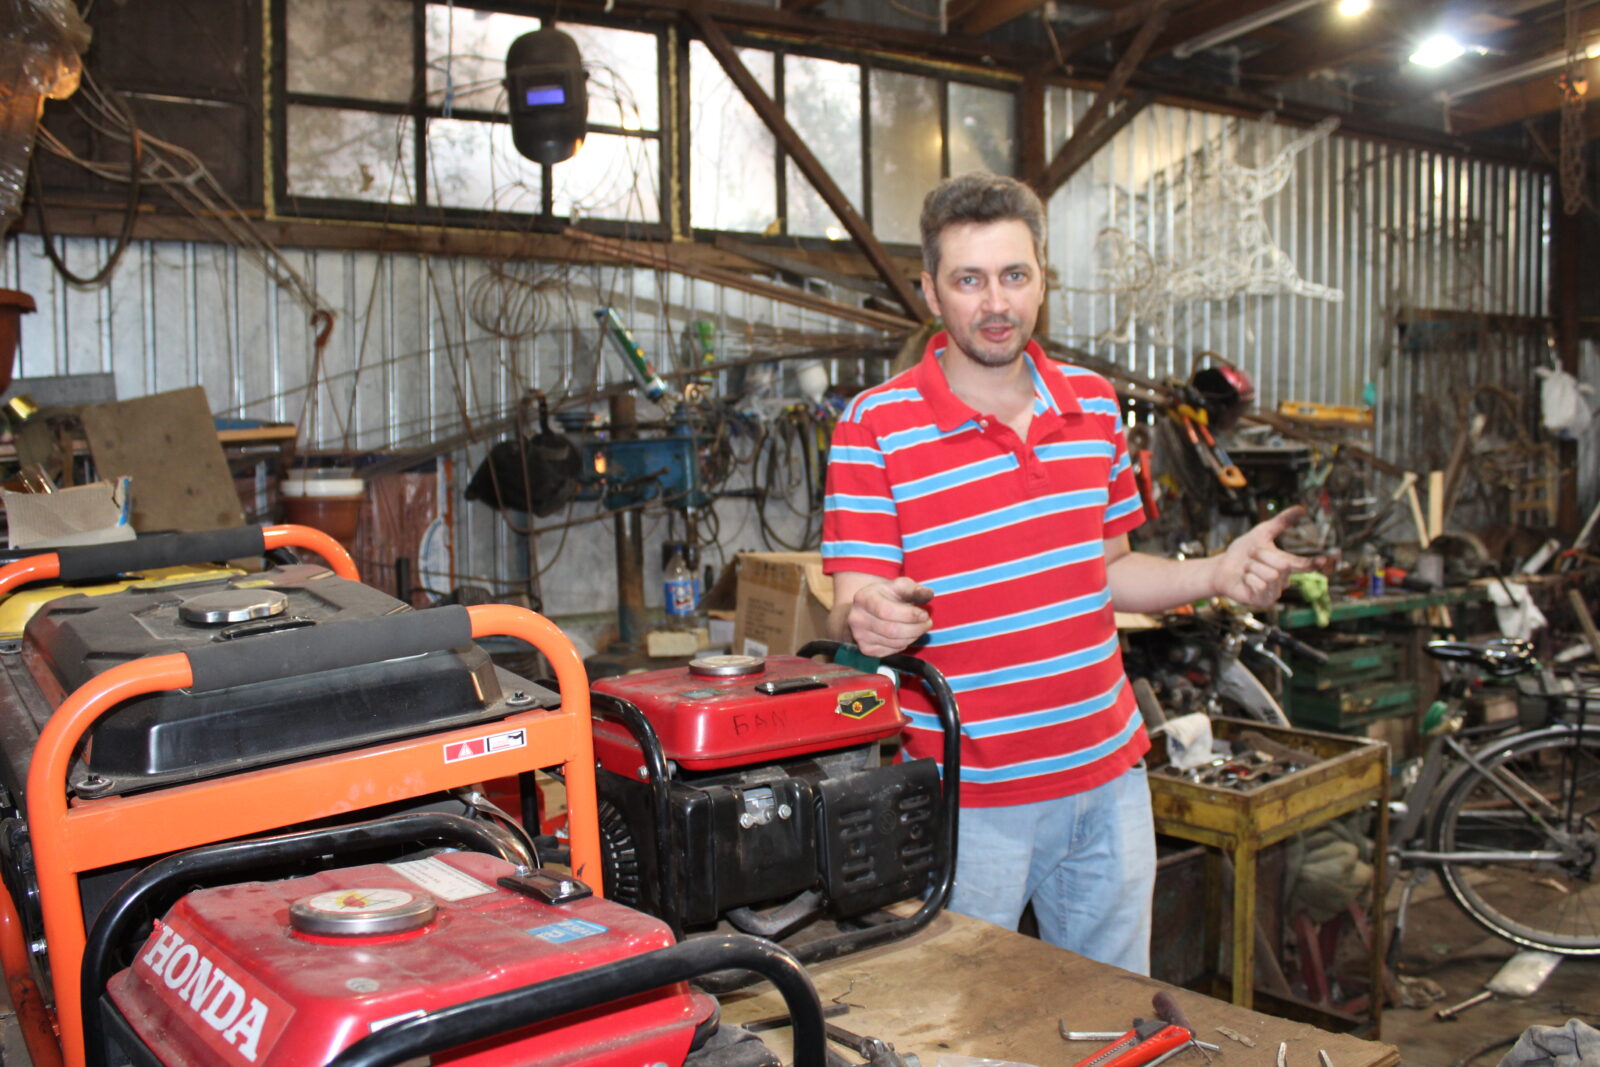 зварювальник-волонтер безкоштовно ремонтує генератори